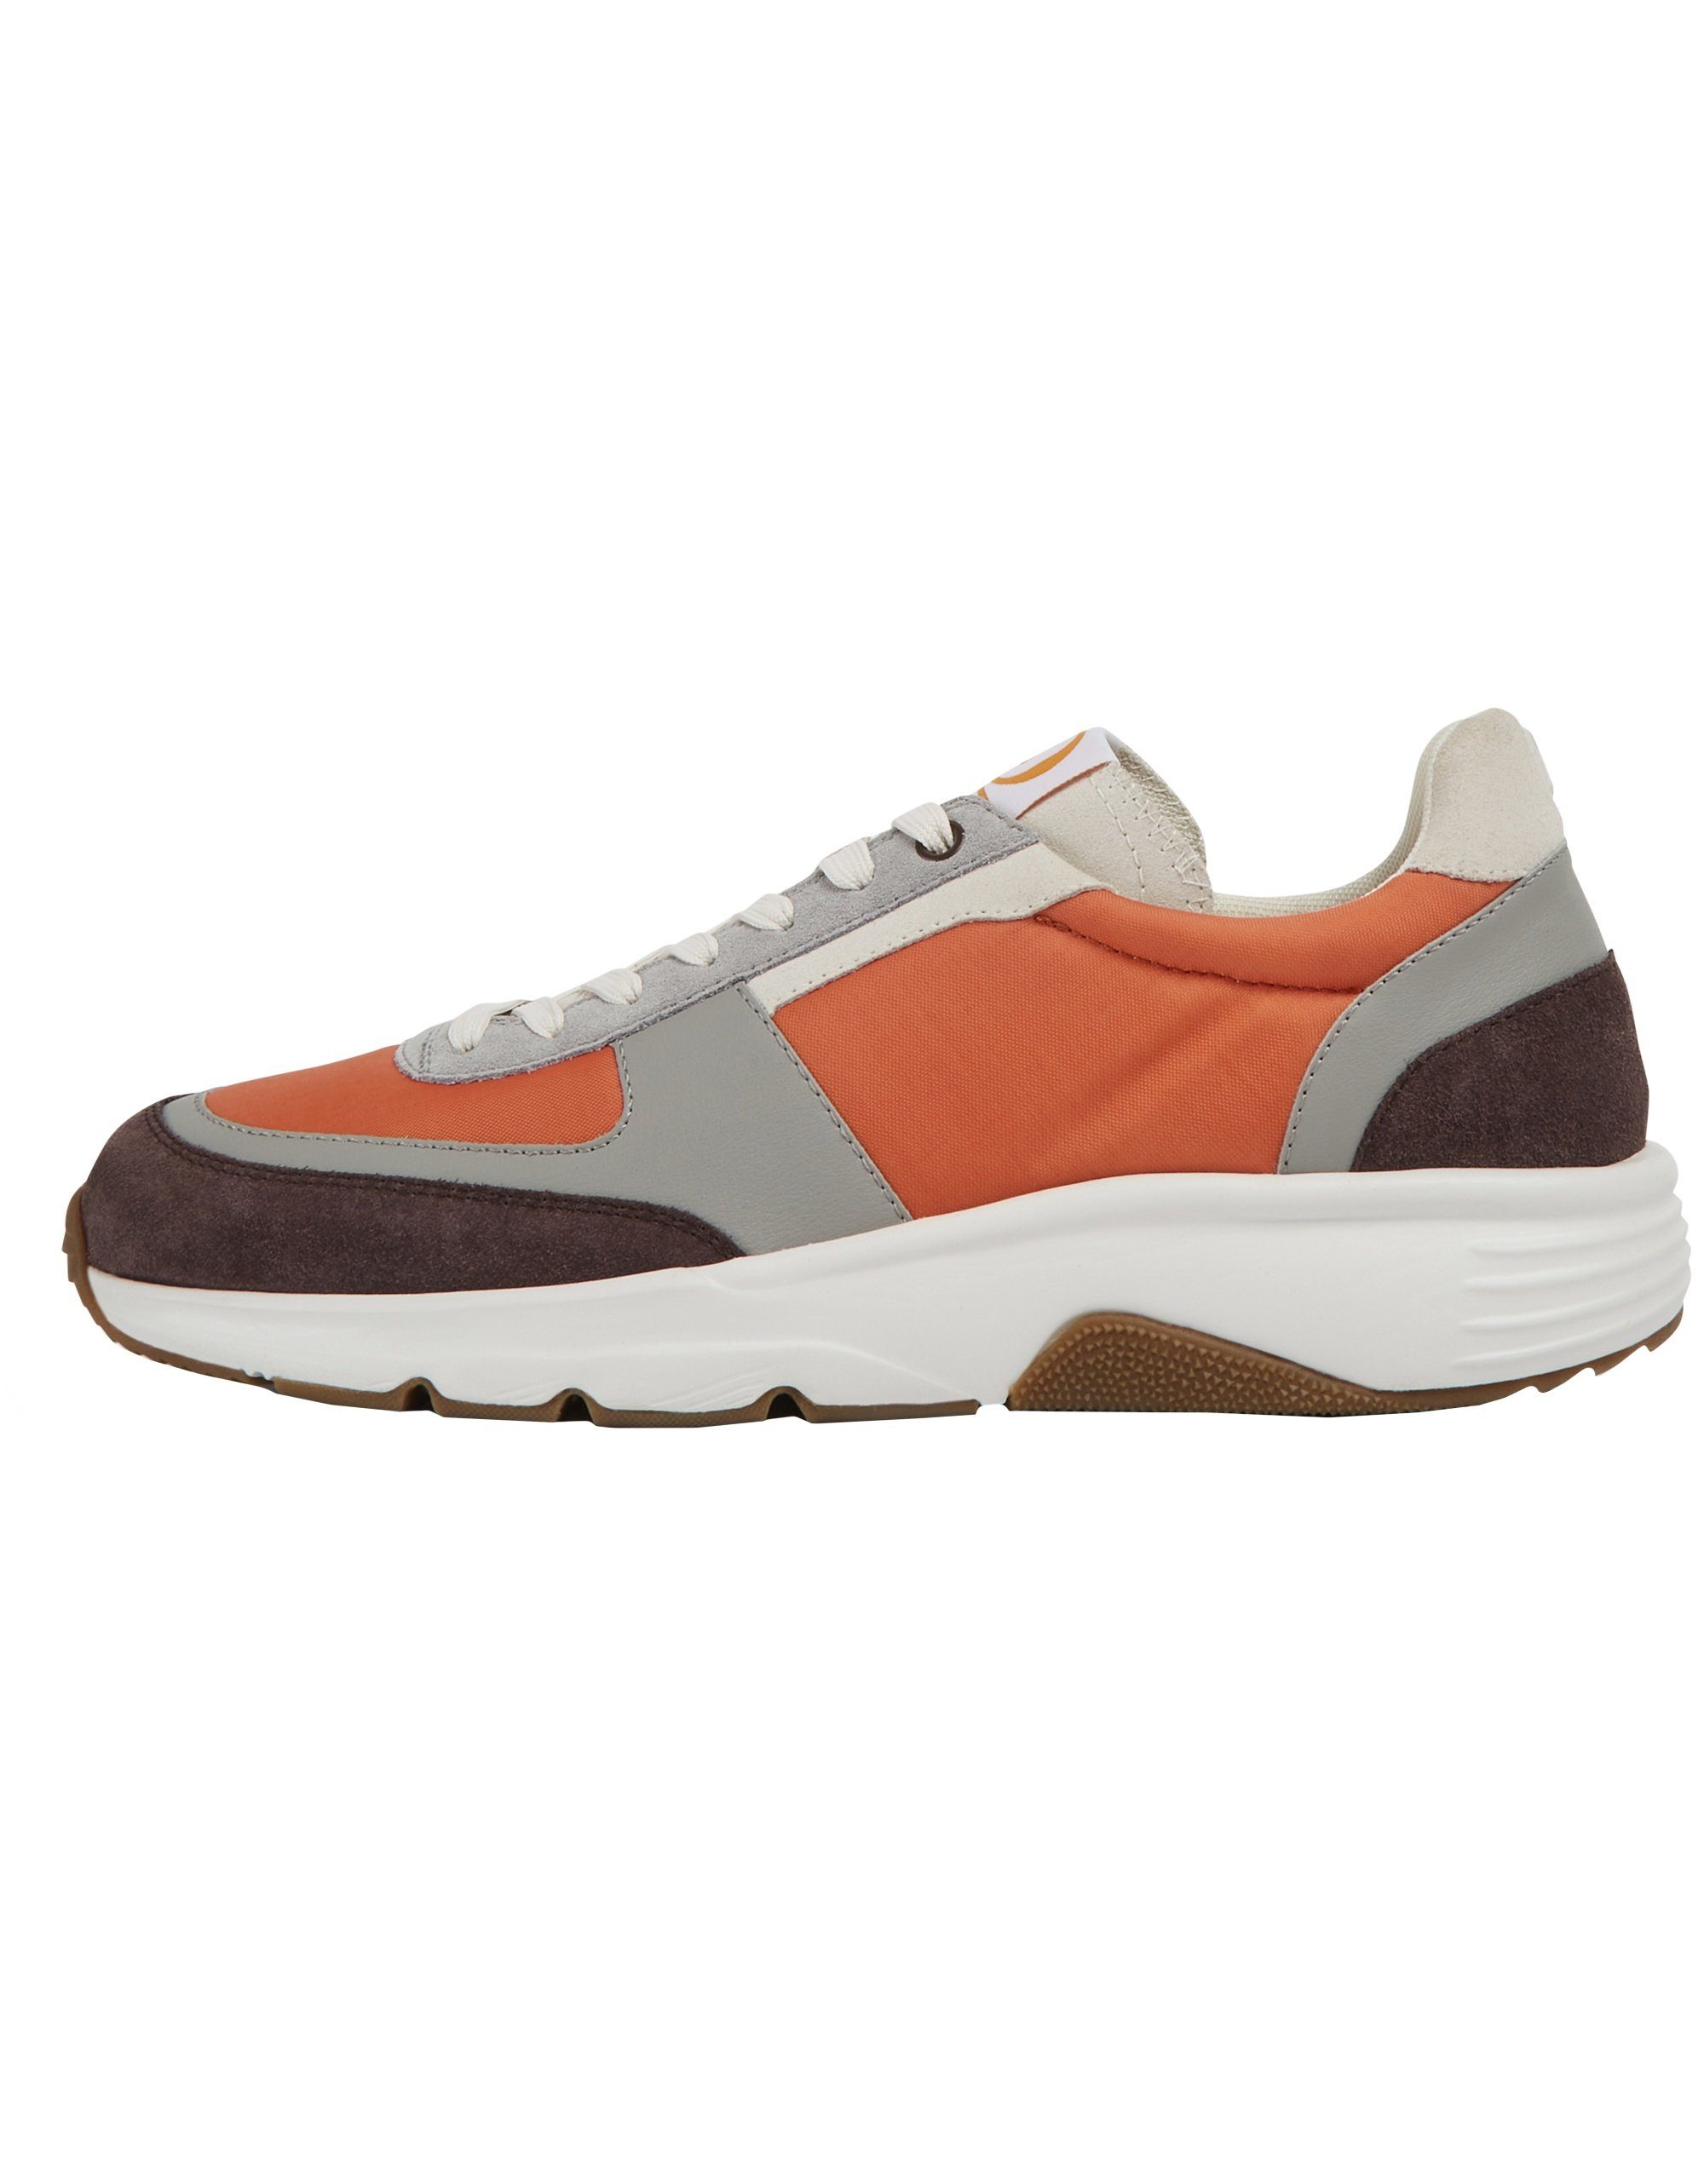 TWINS Camper Orange Sneaker - Grau